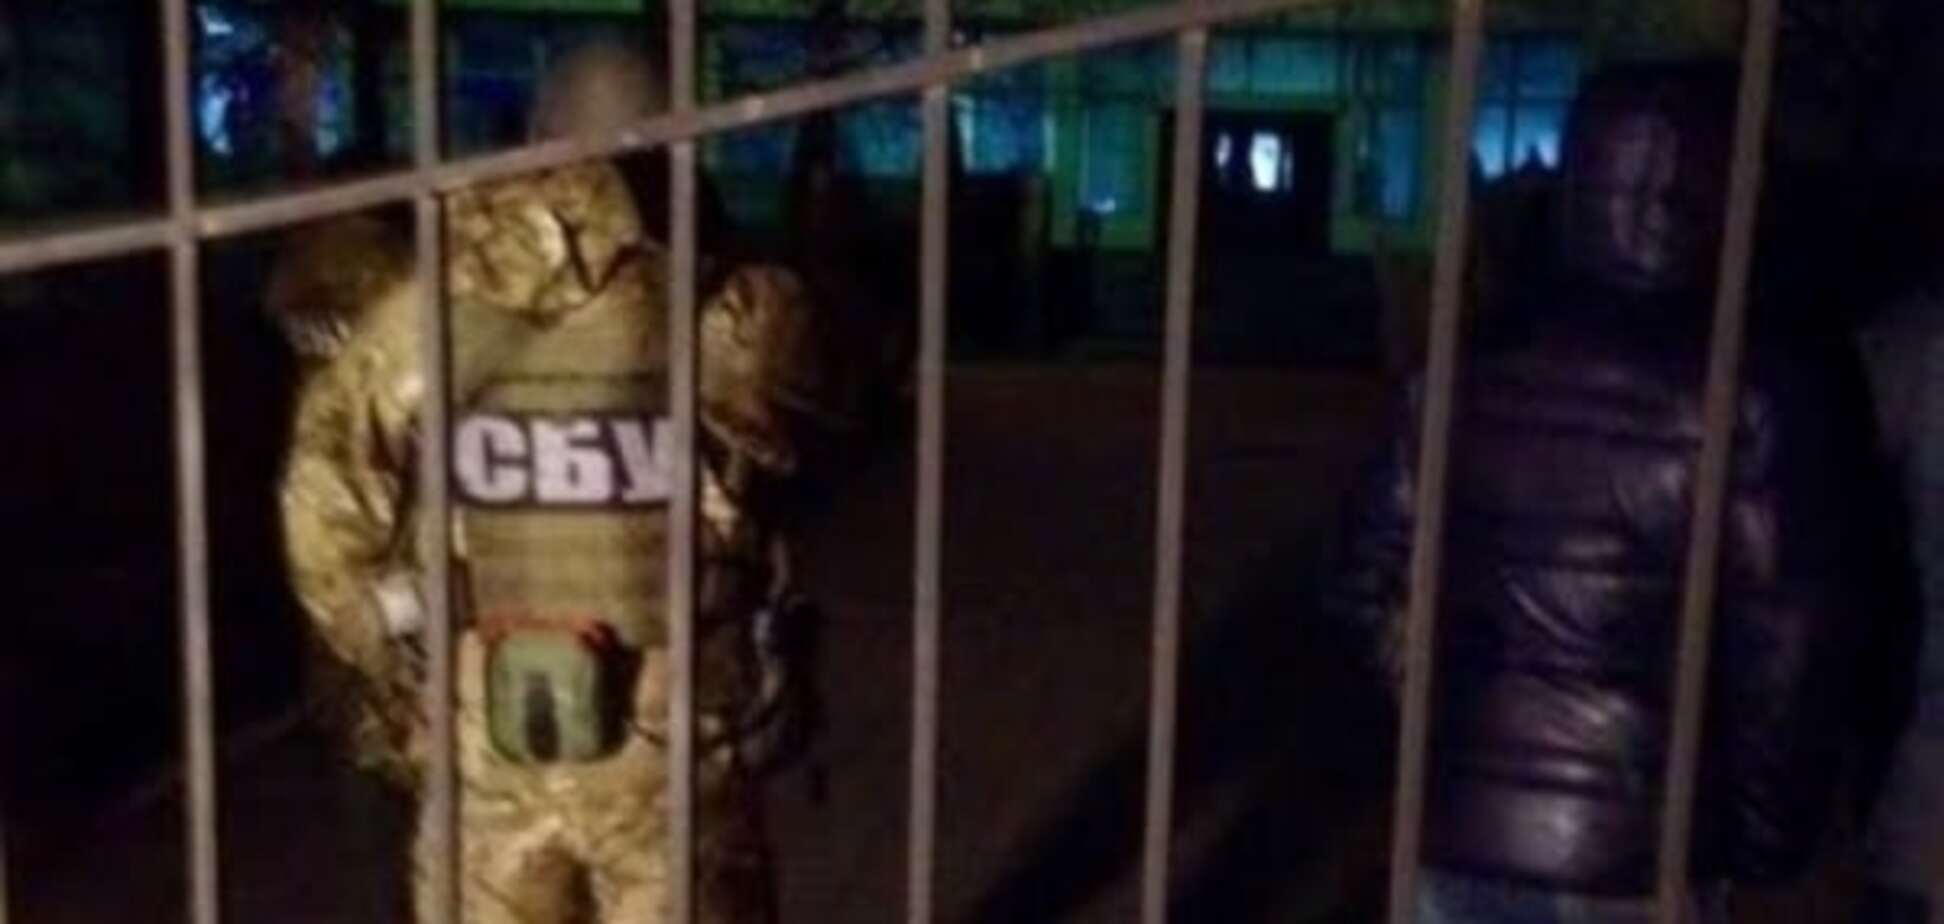 Прокуратура та СБУ провели обшук у будівлі поліції в Одесі: опубліковані фото